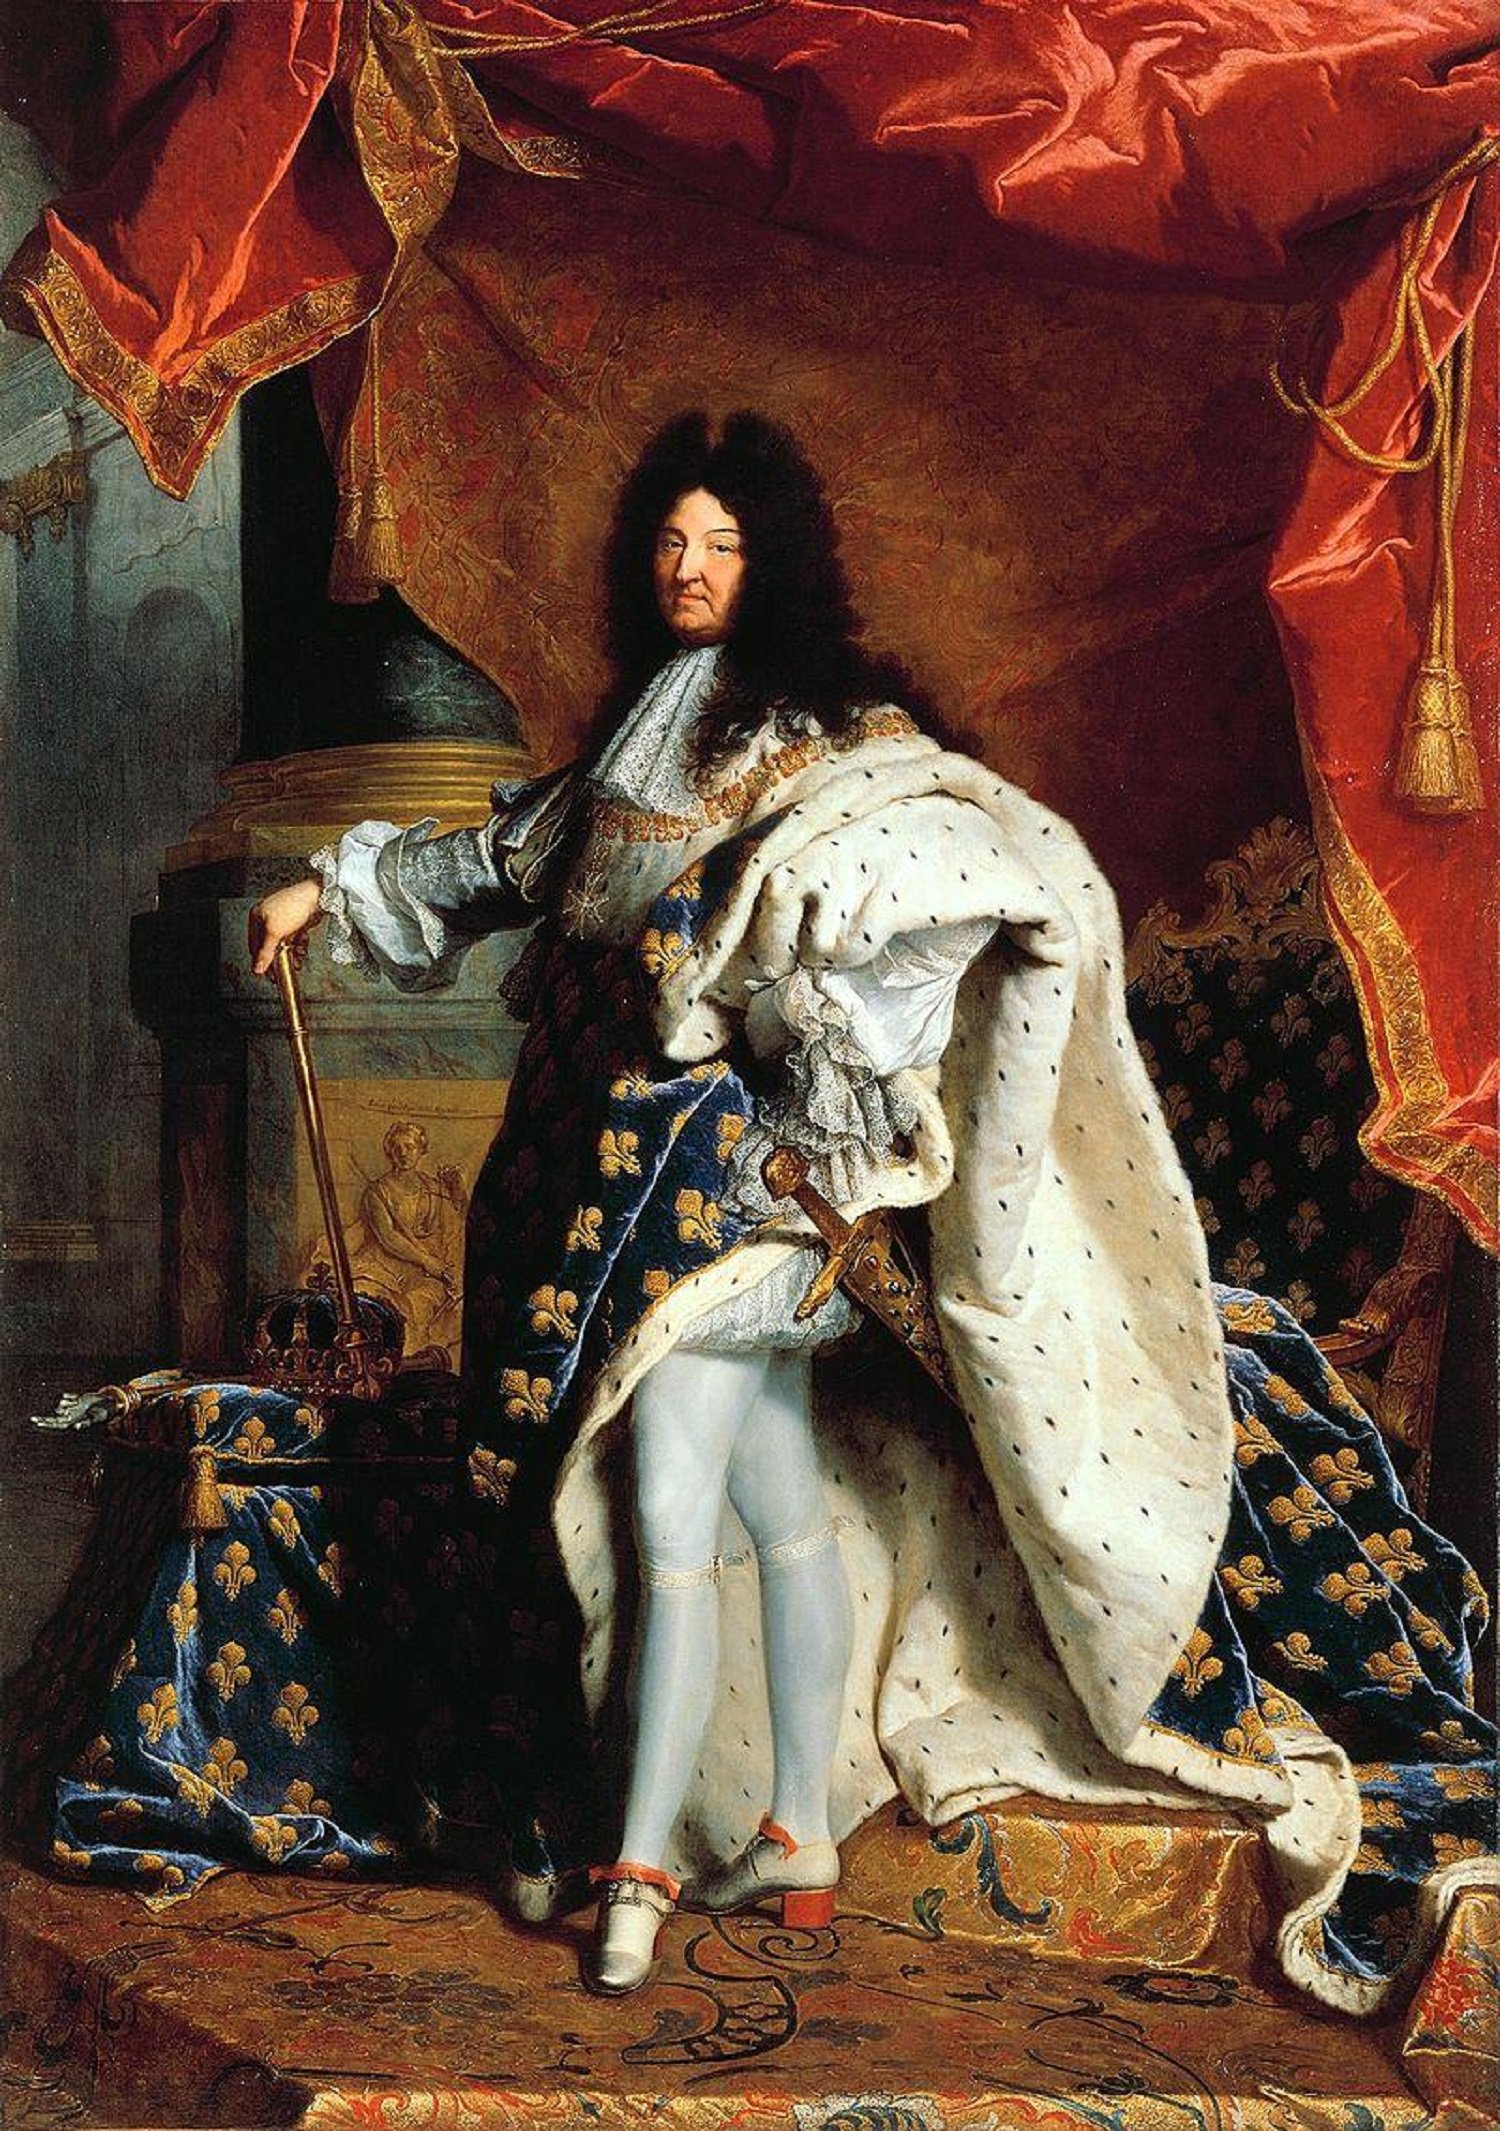 Luis XIV: "El uso del catalán me repugna y es contrario a la dignidad de la nación francesa"